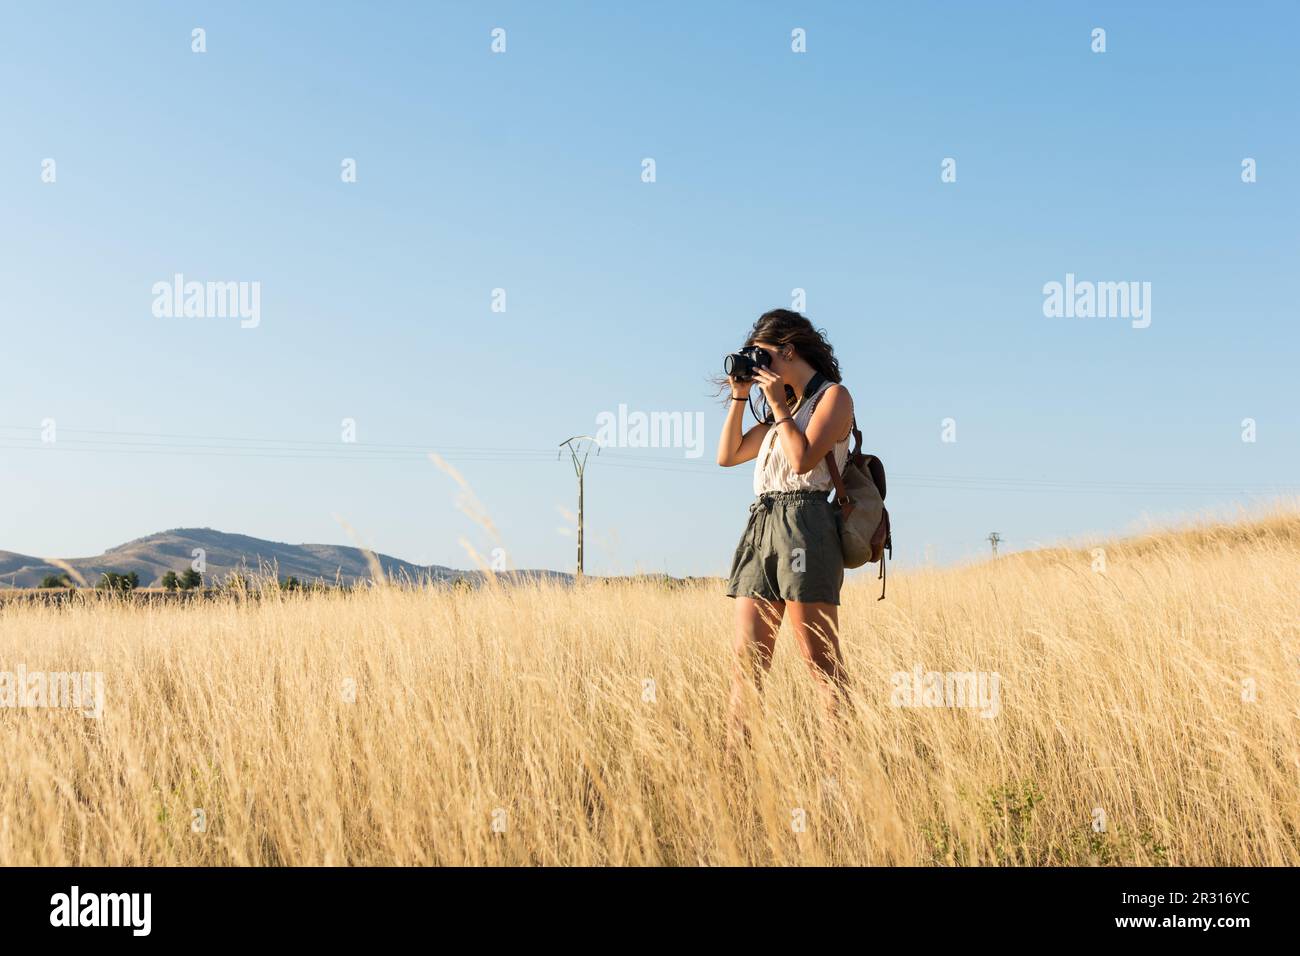 Une jeune femme prend une photo avec un appareil photo dans un pré au soleil Banque D'Images